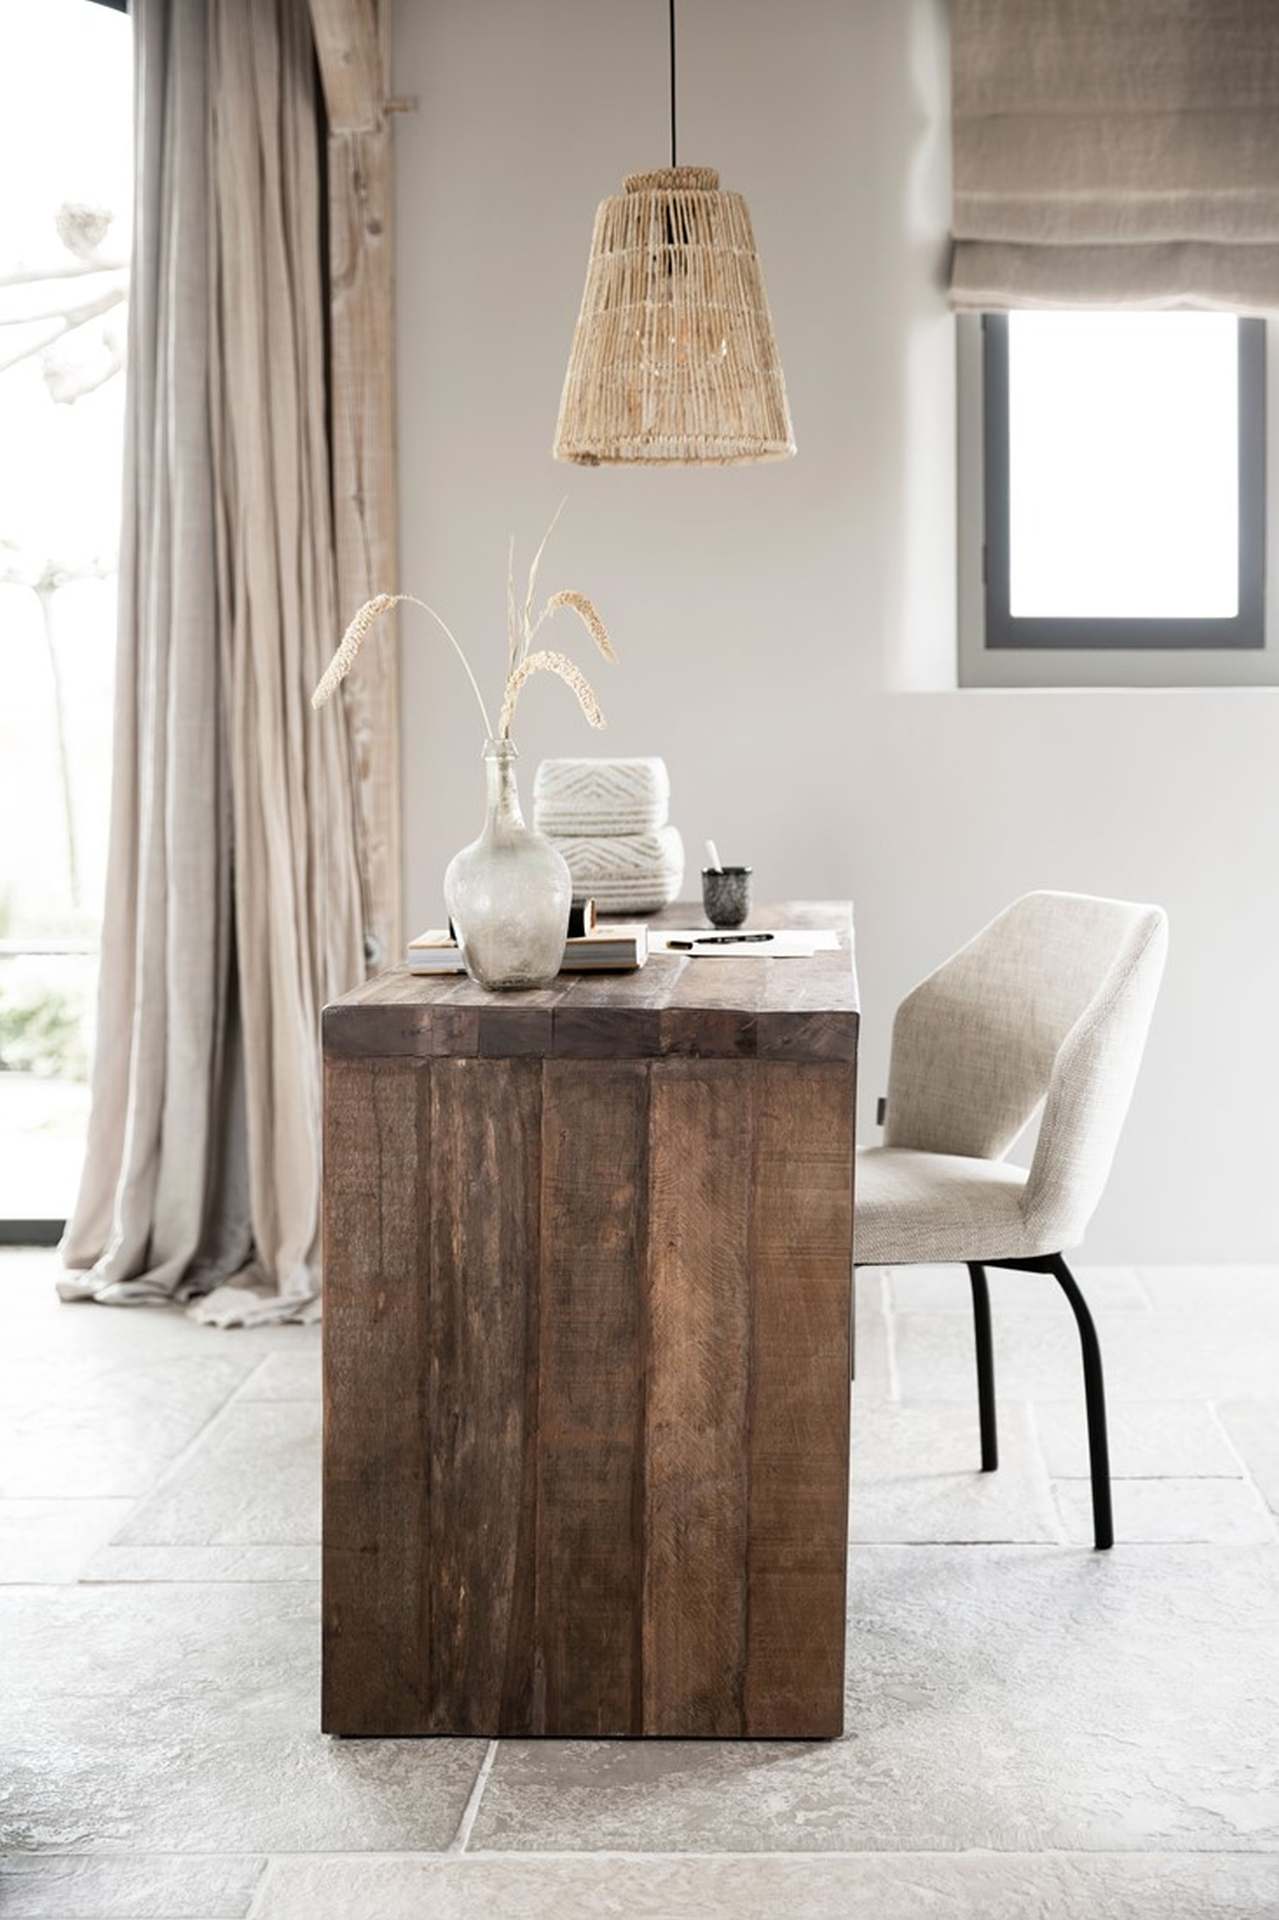 Der Esszimmerstuhl Bloom überzeugt mit seinem modernem aber auch schlichtem Design. Gefertigt wurde der Stuhl aus einem Polaris Stoff, welcher einen Natur Farbton besitzt. Das Gestell ist aus Metall und ist Schwarz.